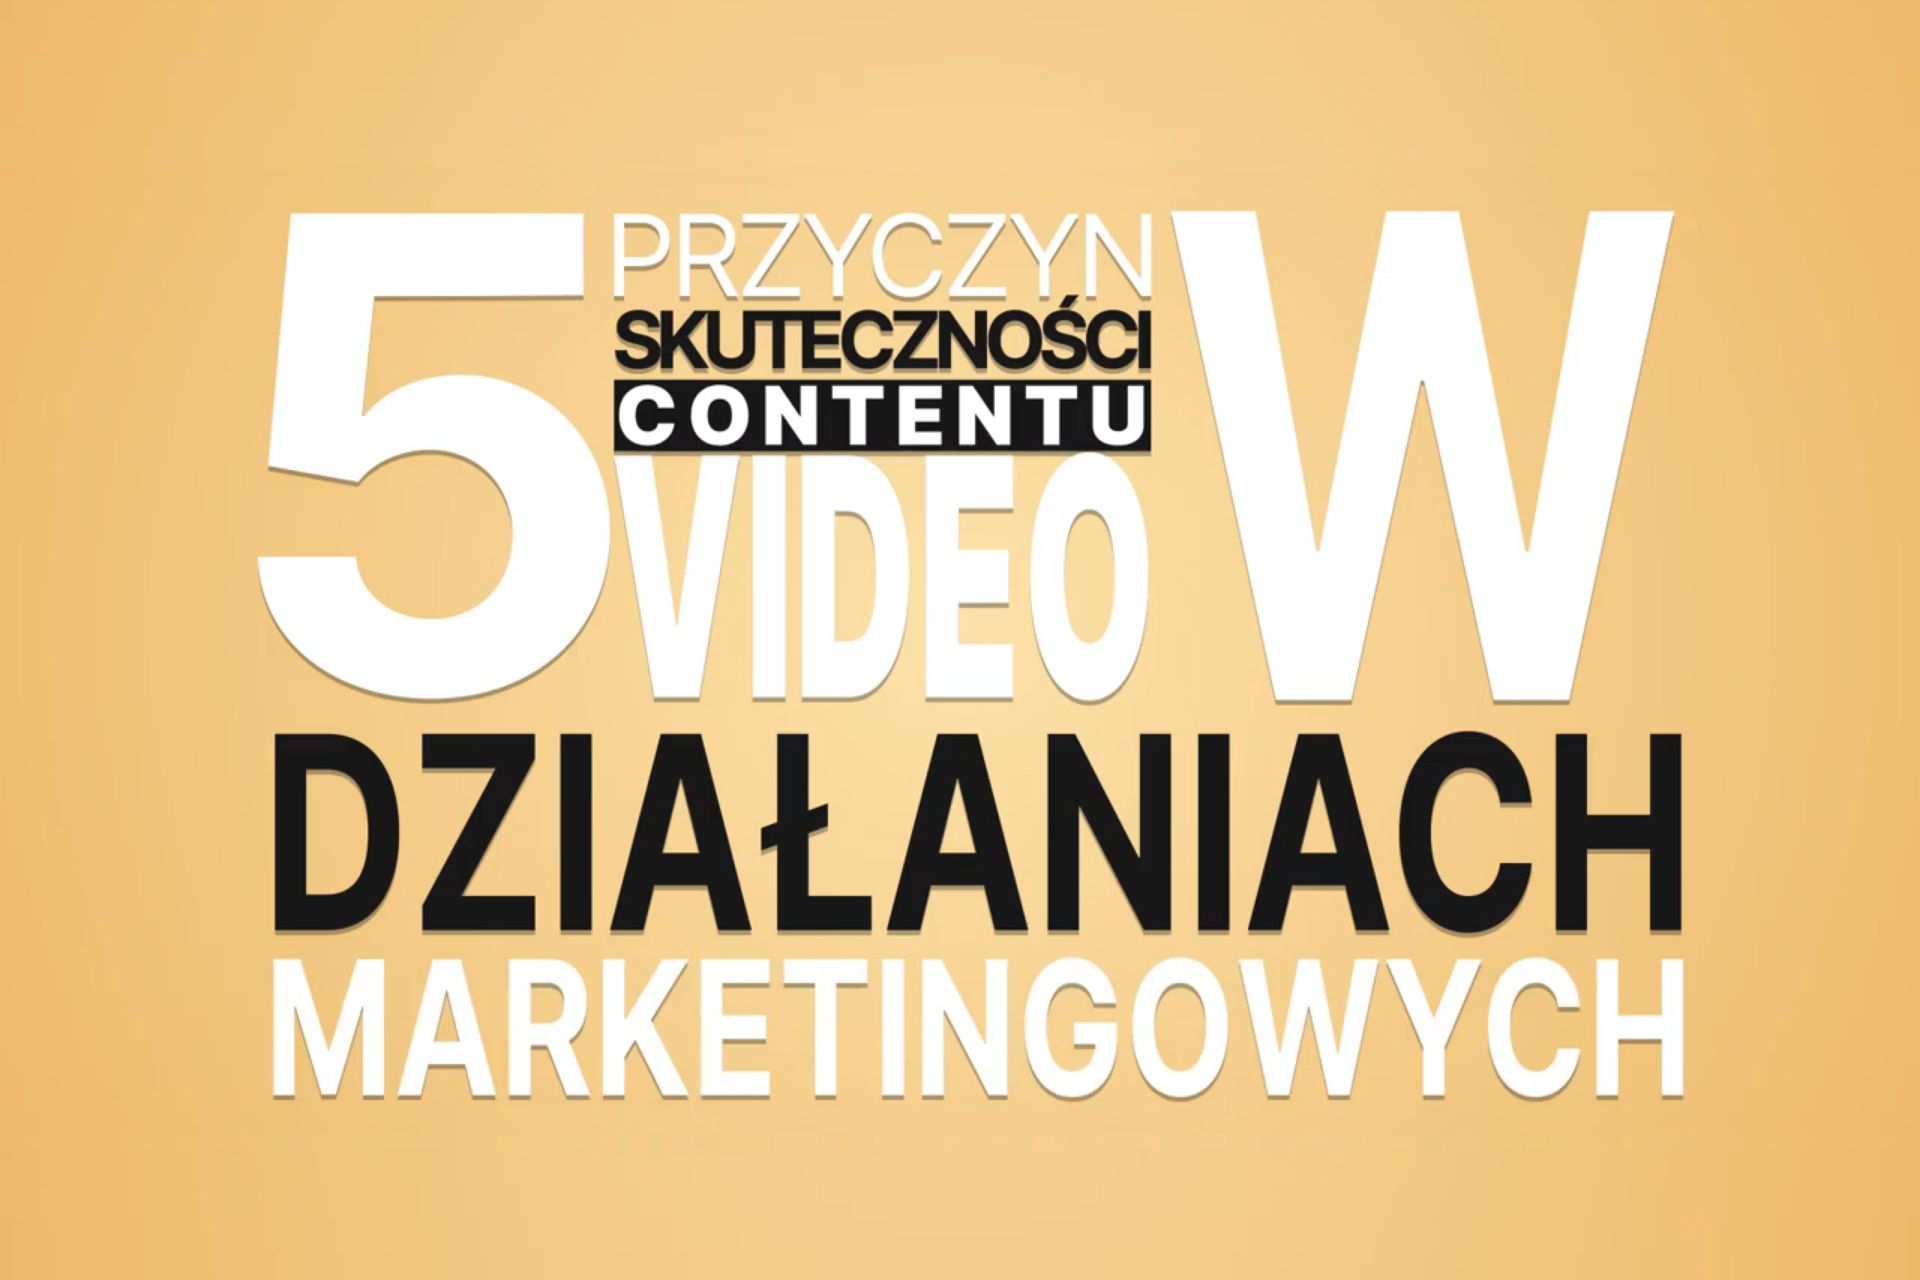 5 przyczyn skuteczności contentu video w działaniach marketingowych